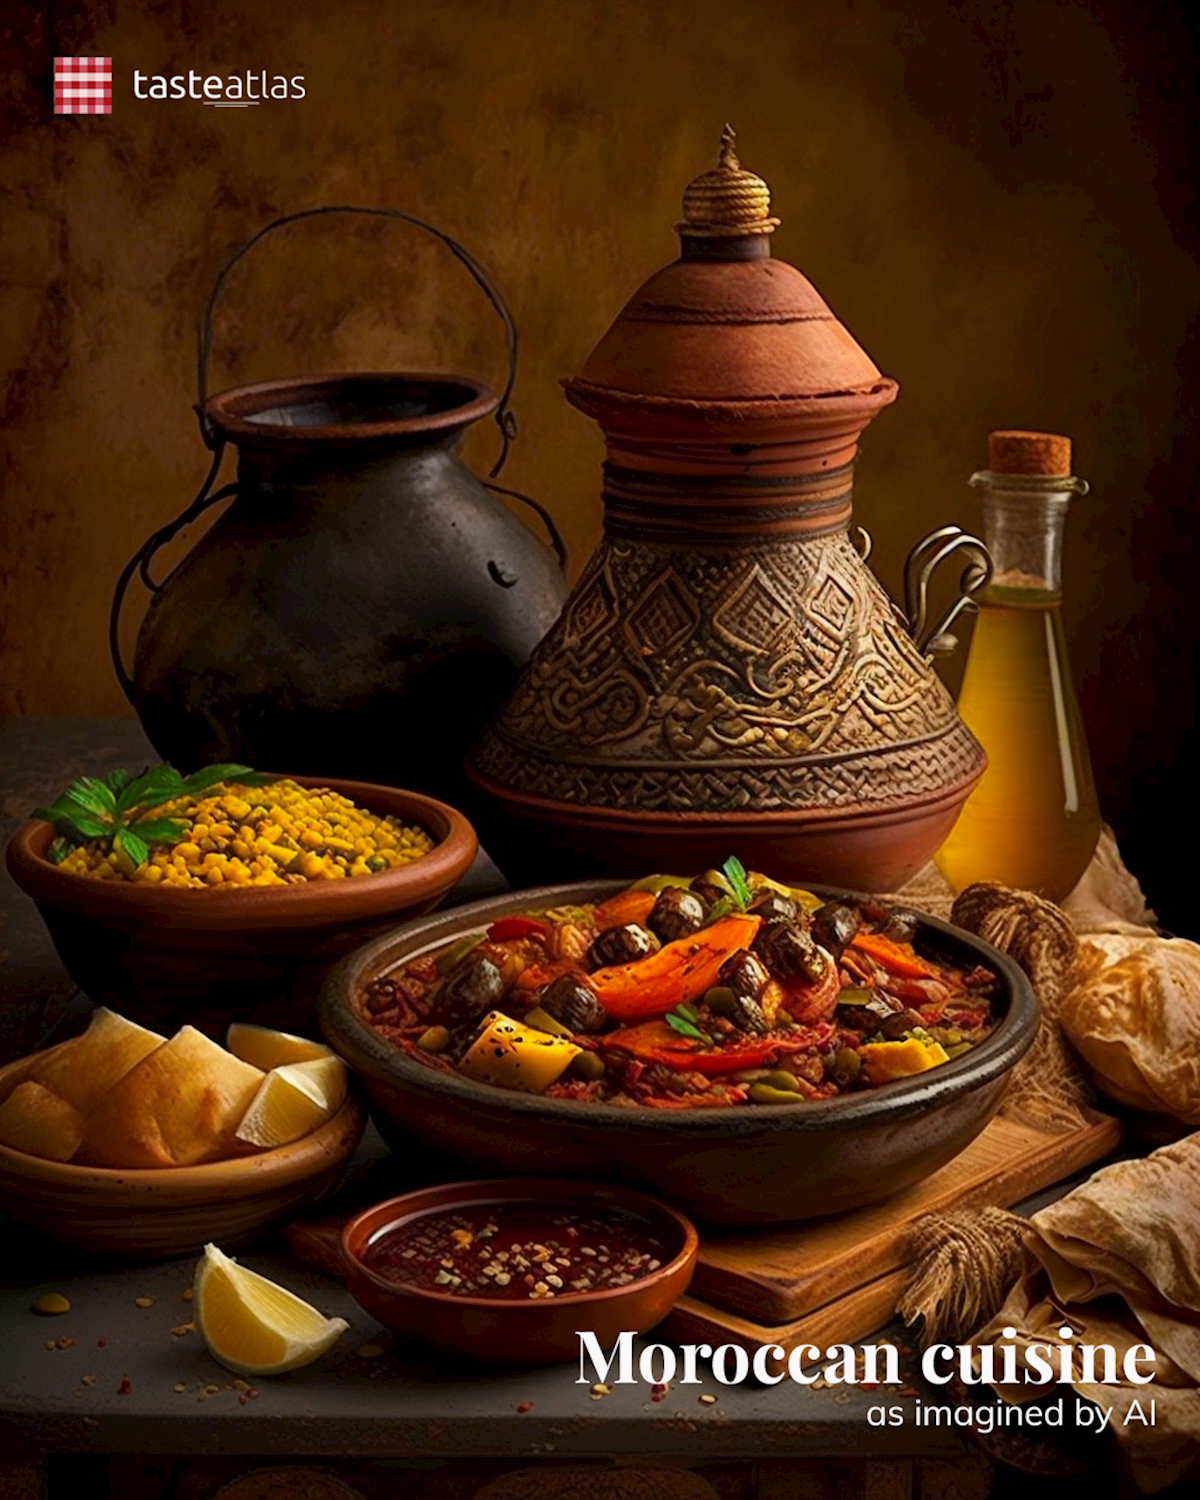 Prompt: Imagine Moroccan cuisine